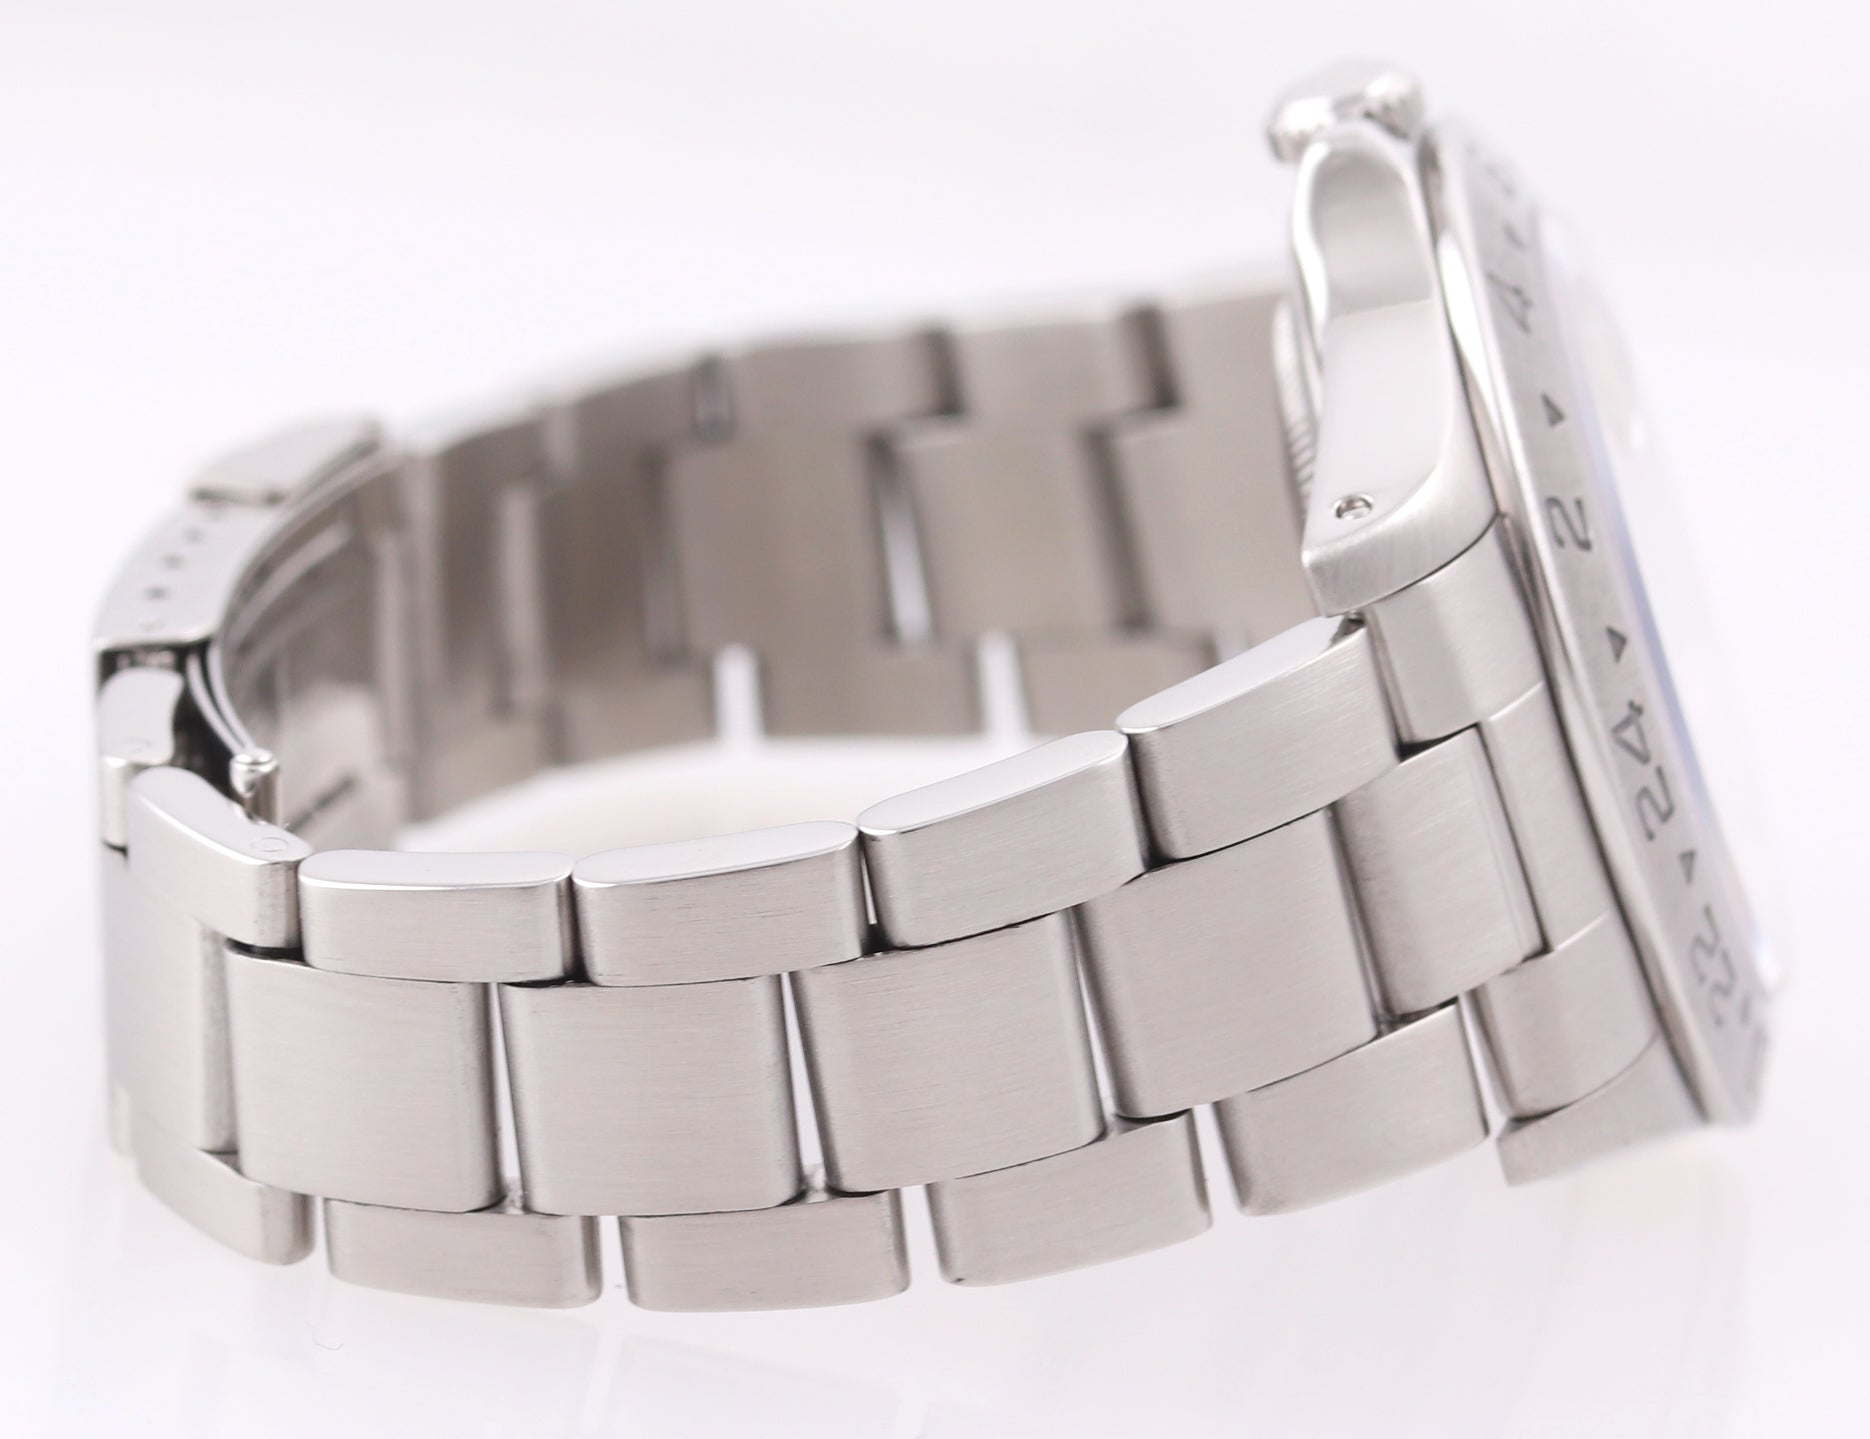 Rolex 16570 Stainless Steel White Polar Tritium Dial GMT 40mm Watch